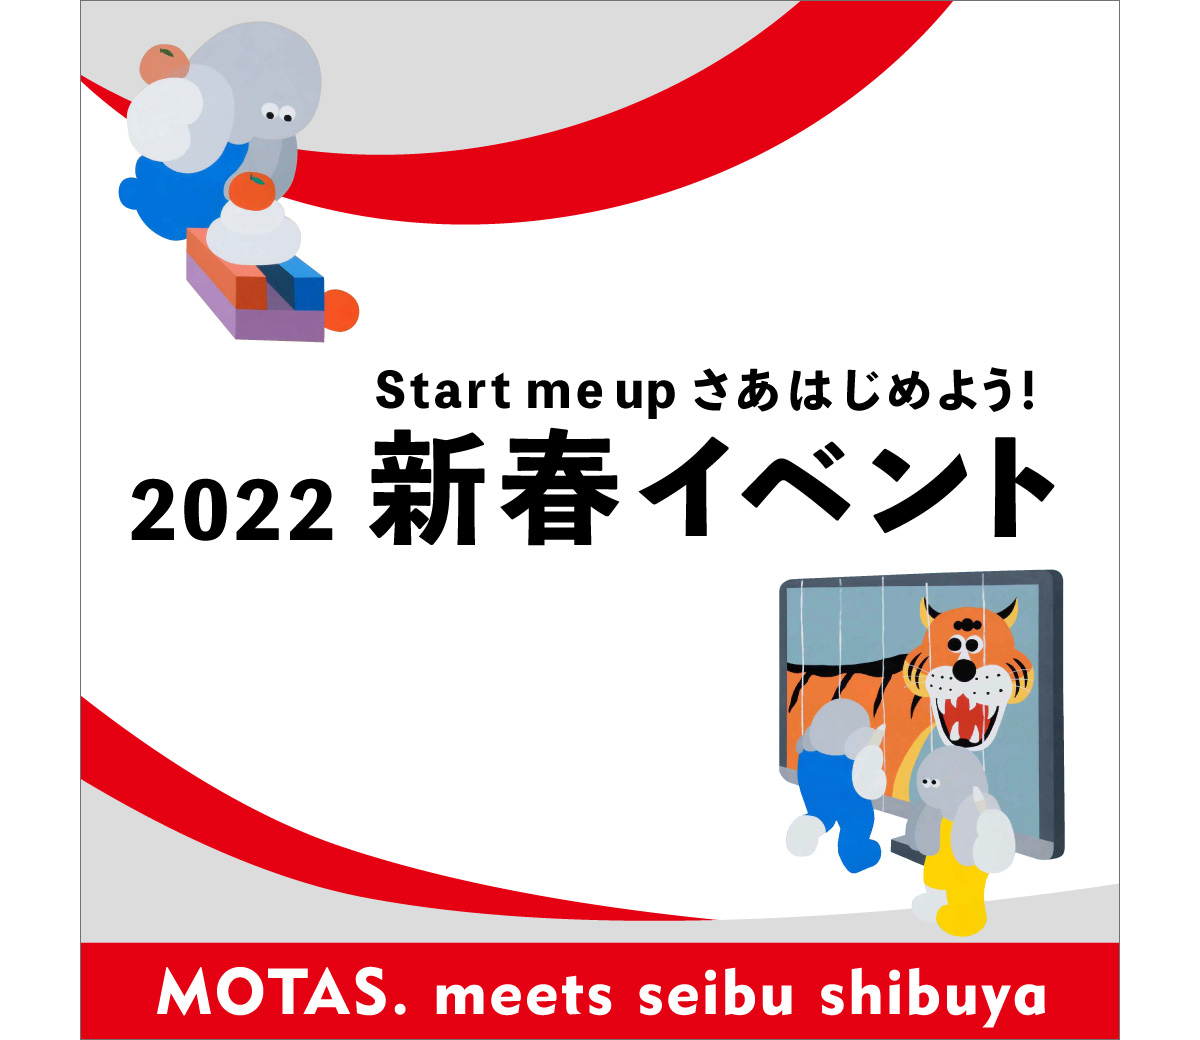 西武渋谷店の初売りイベント「MOTAS. meets seibu shibuya」メインビジュアル